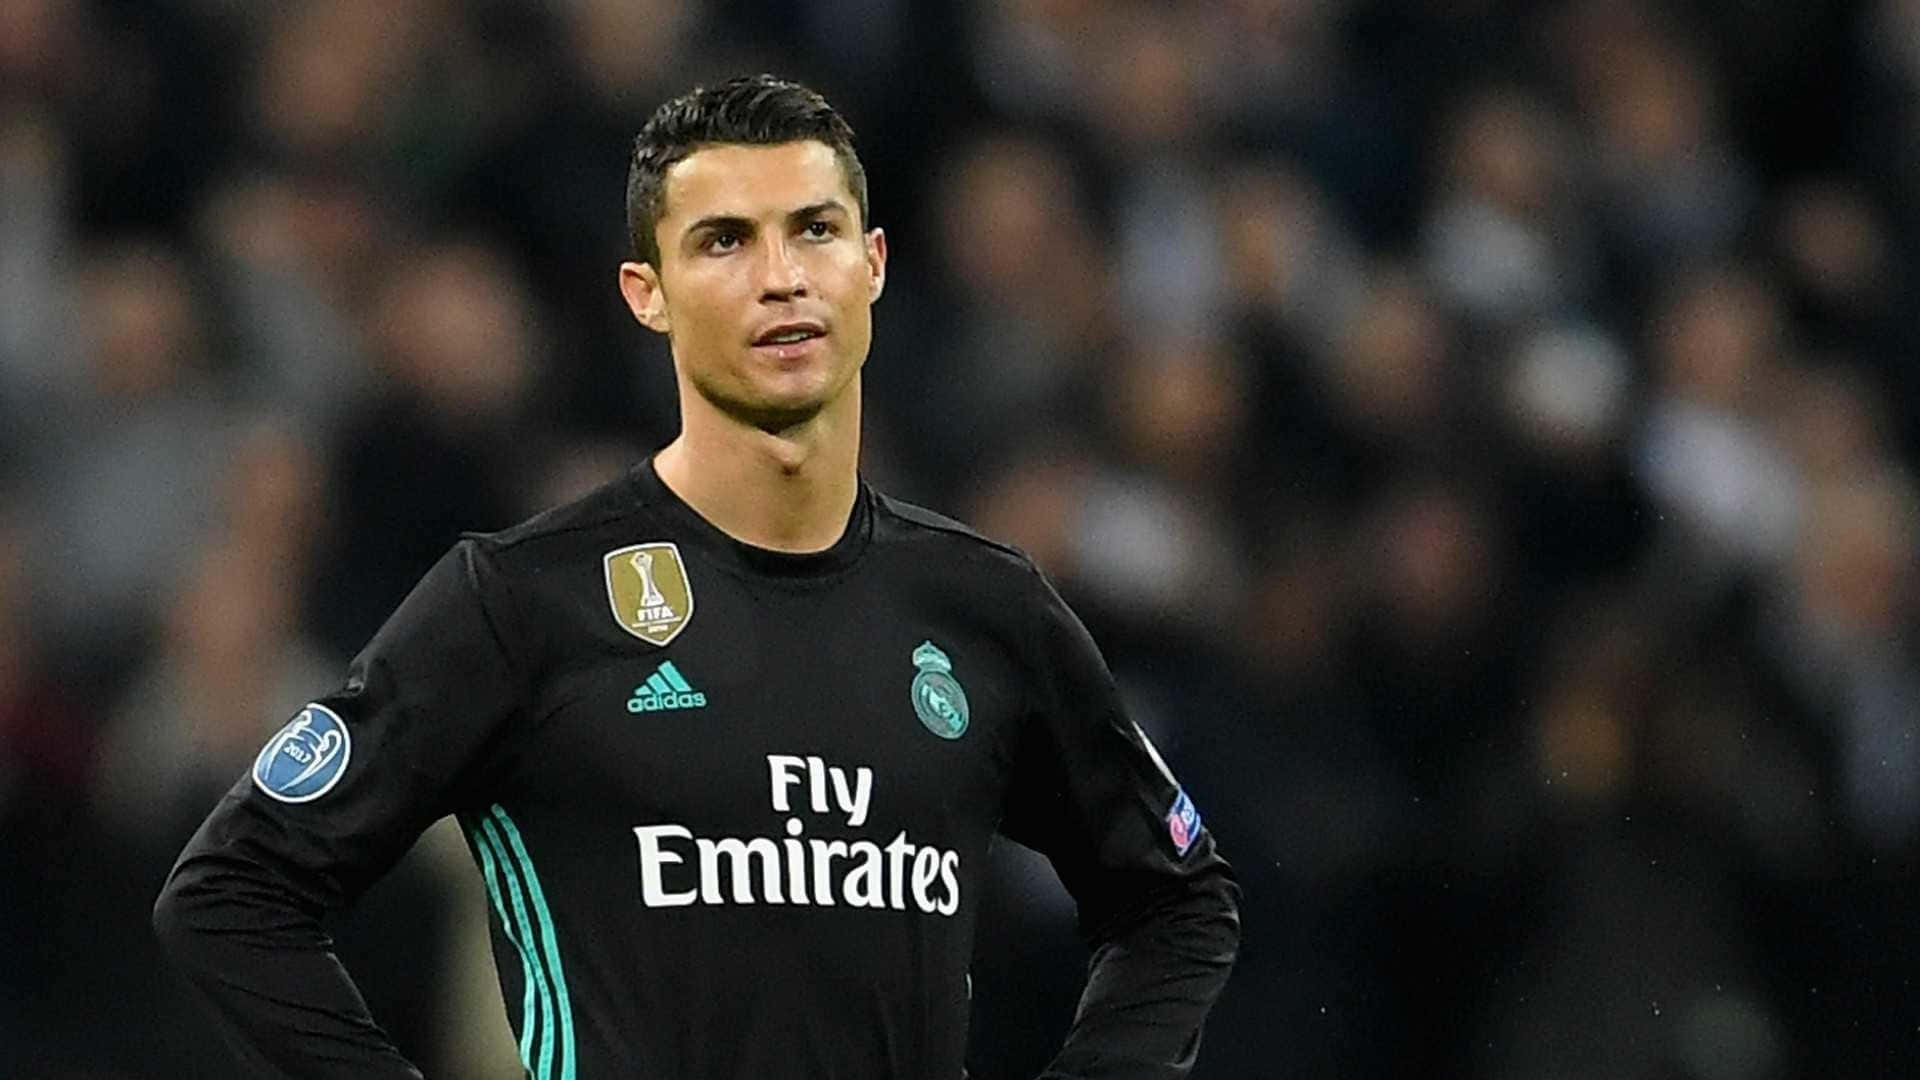 Football superstar Cristiano Ronaldo celebrating a goal.